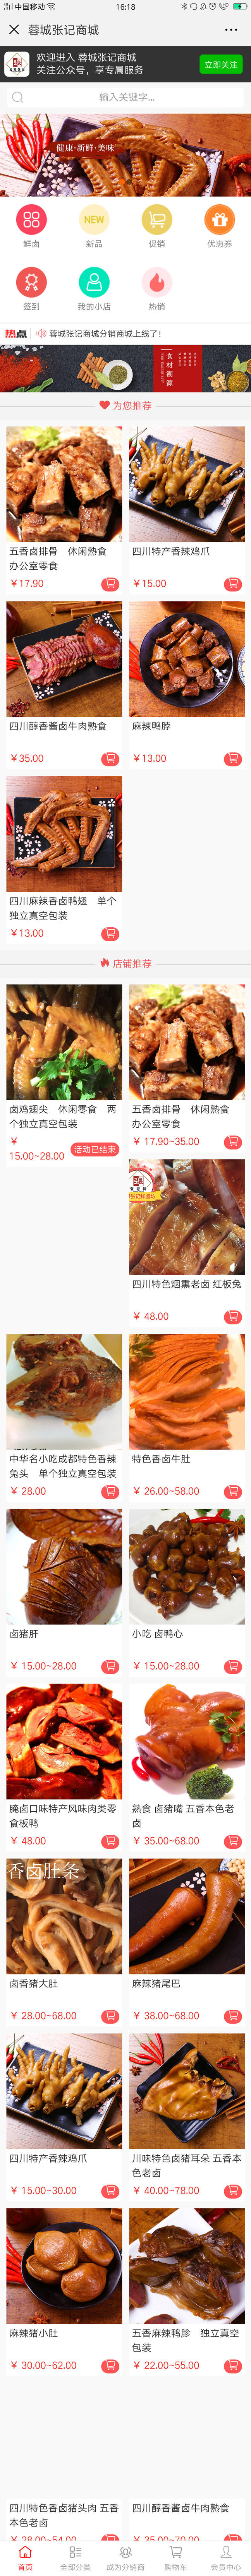 副食品红色成都-张涛微分销基础版.jpg